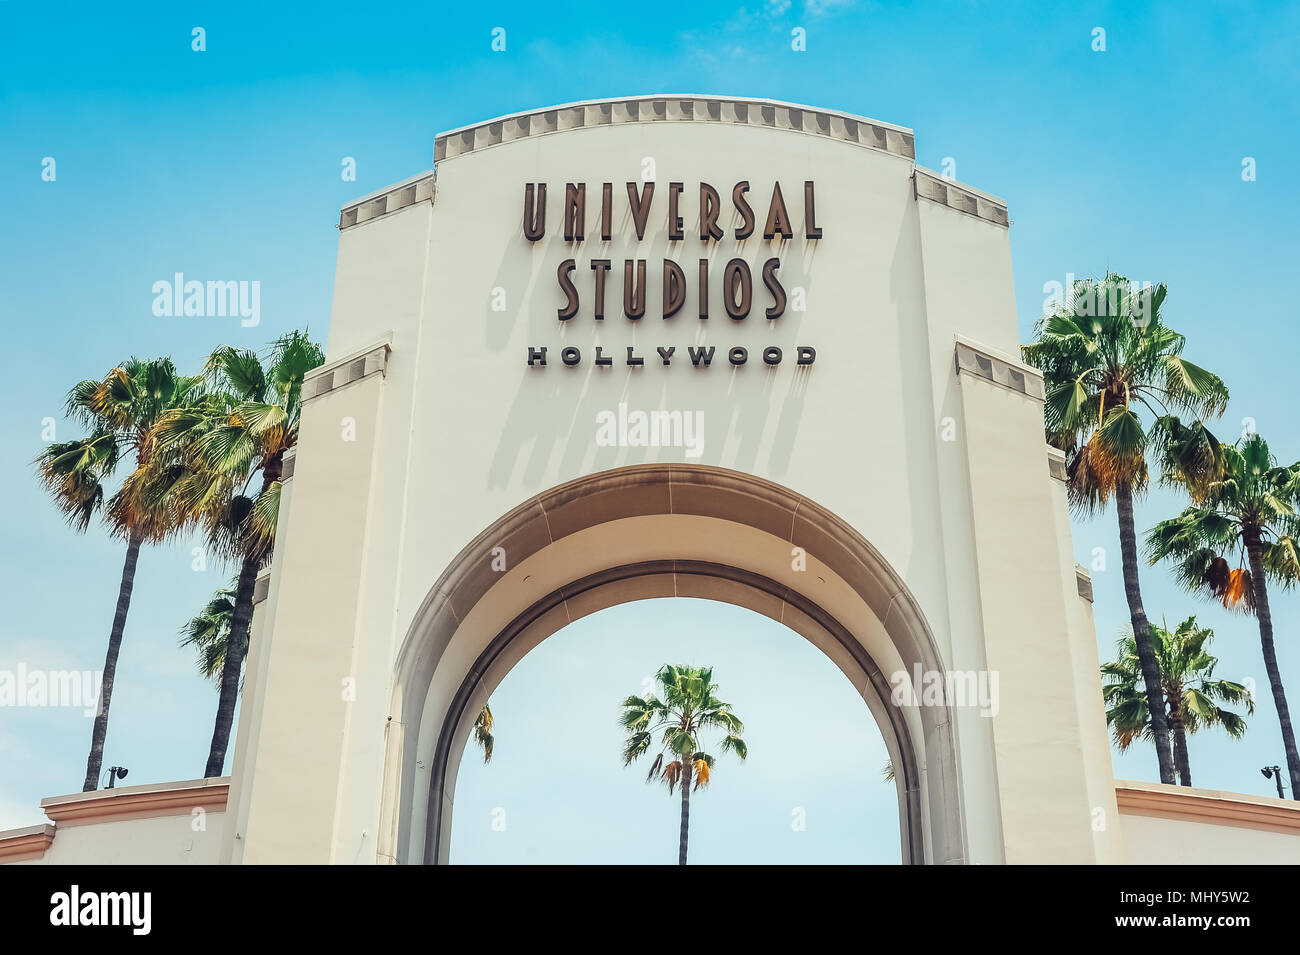 Los Angeles/California/EE.UU. - 07.19.2013: puerta de entrada de los Universal Studios Hollywood, cielo azul y palmeras en el lado de la puerta. Foto de stock